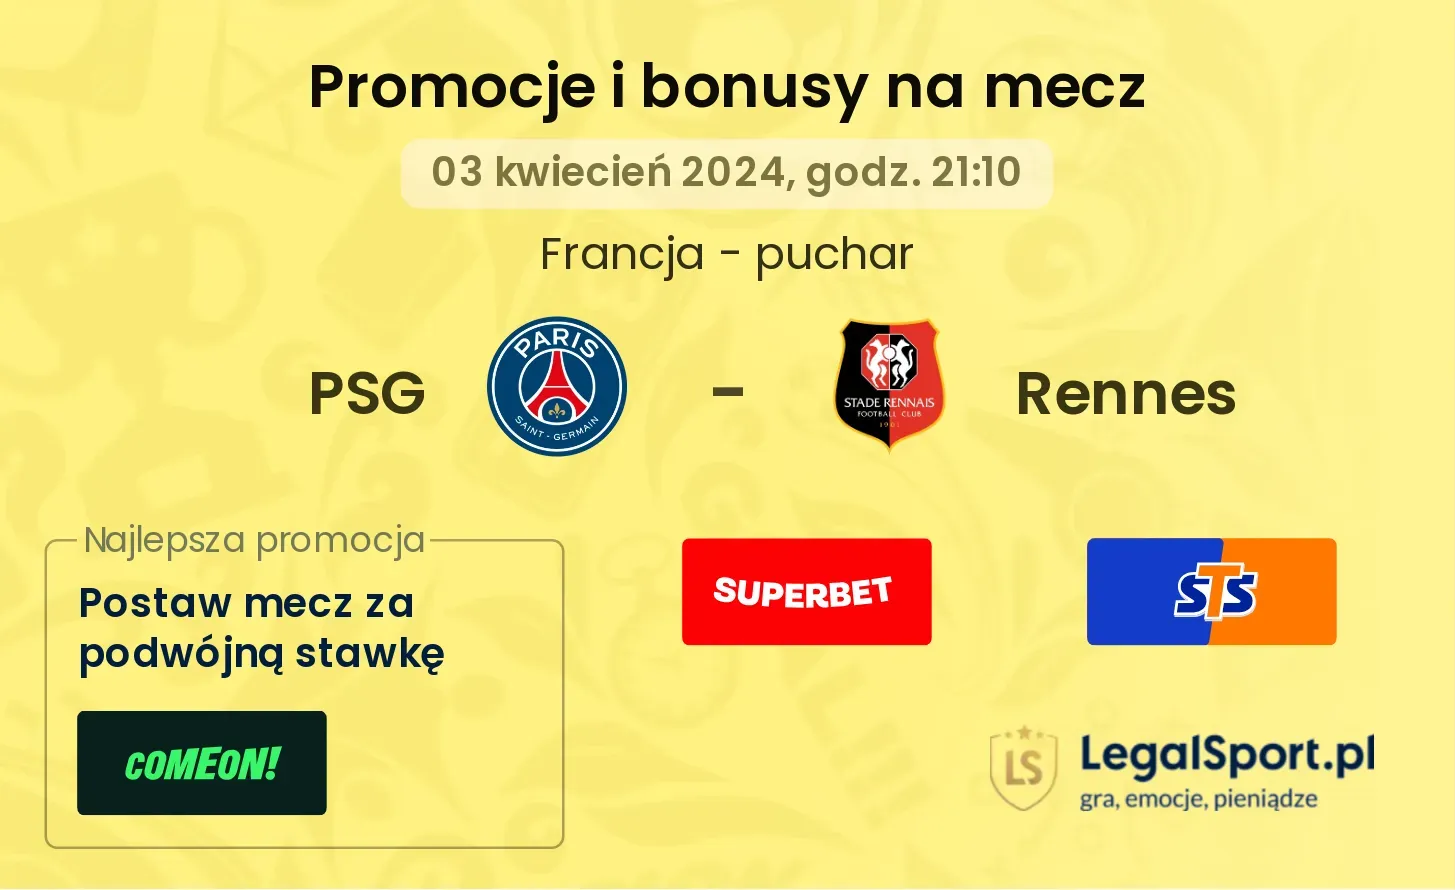 PSG - Rennes promocje bonusy na mecz